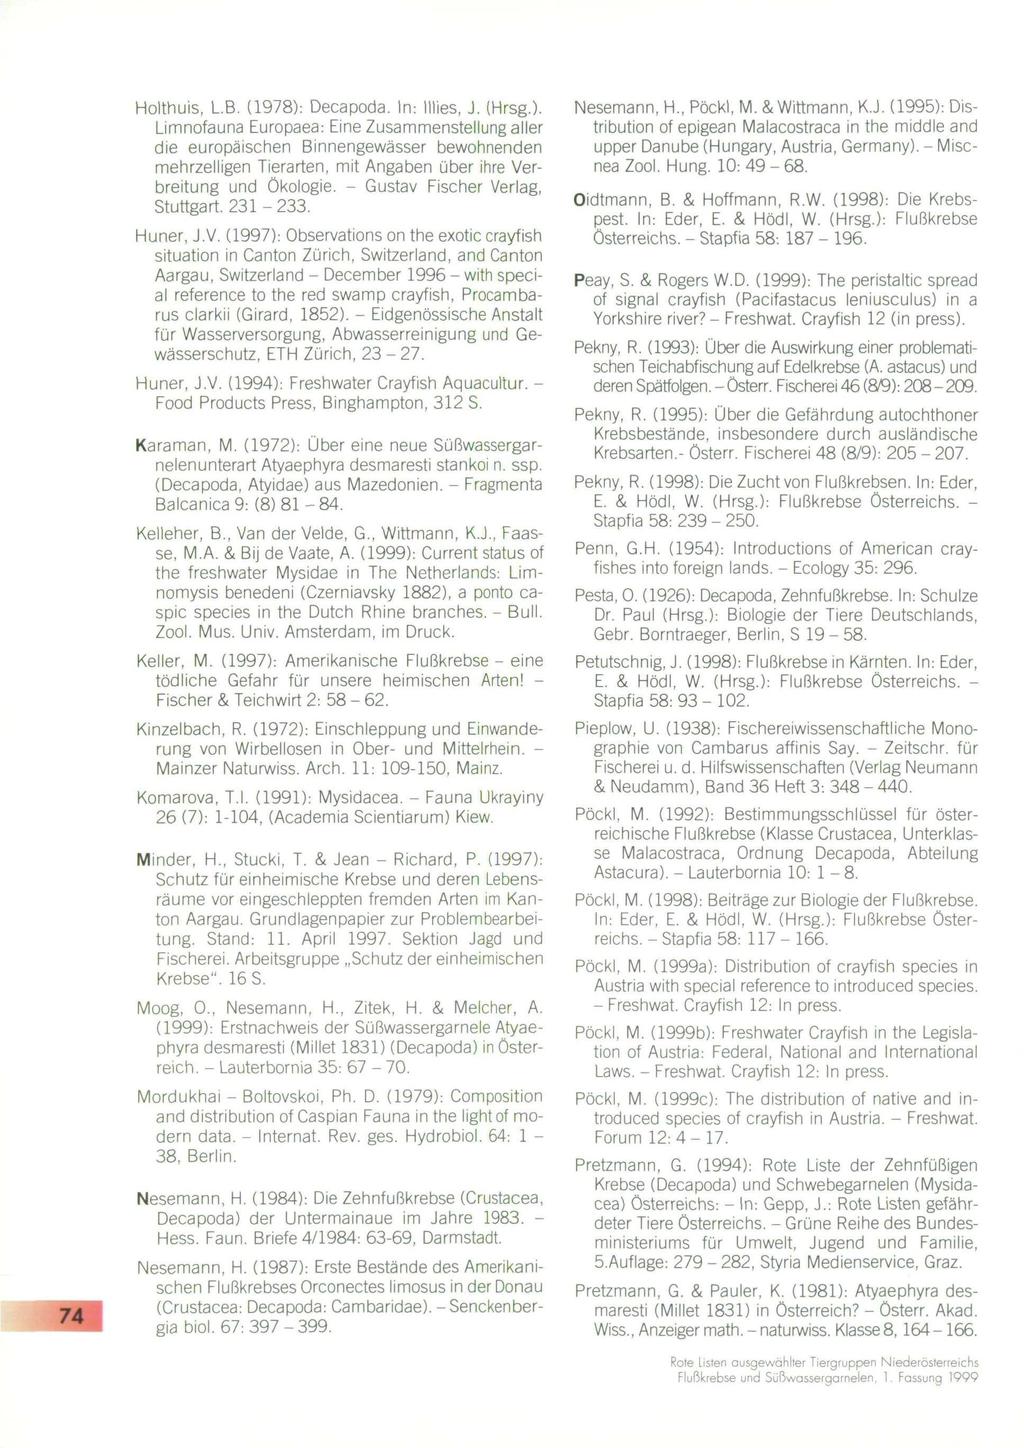 Holthuis, L.B. (1978): Decapoda. In: lilies, J. (Hrsg.). Limnofauna Europaea: Eine Zusammenstellung aller die europäischen Binnengewässer bewohnenden mehrzelligen Tierarten, mit Angaben über ihre Verbreitung und Ökologie.